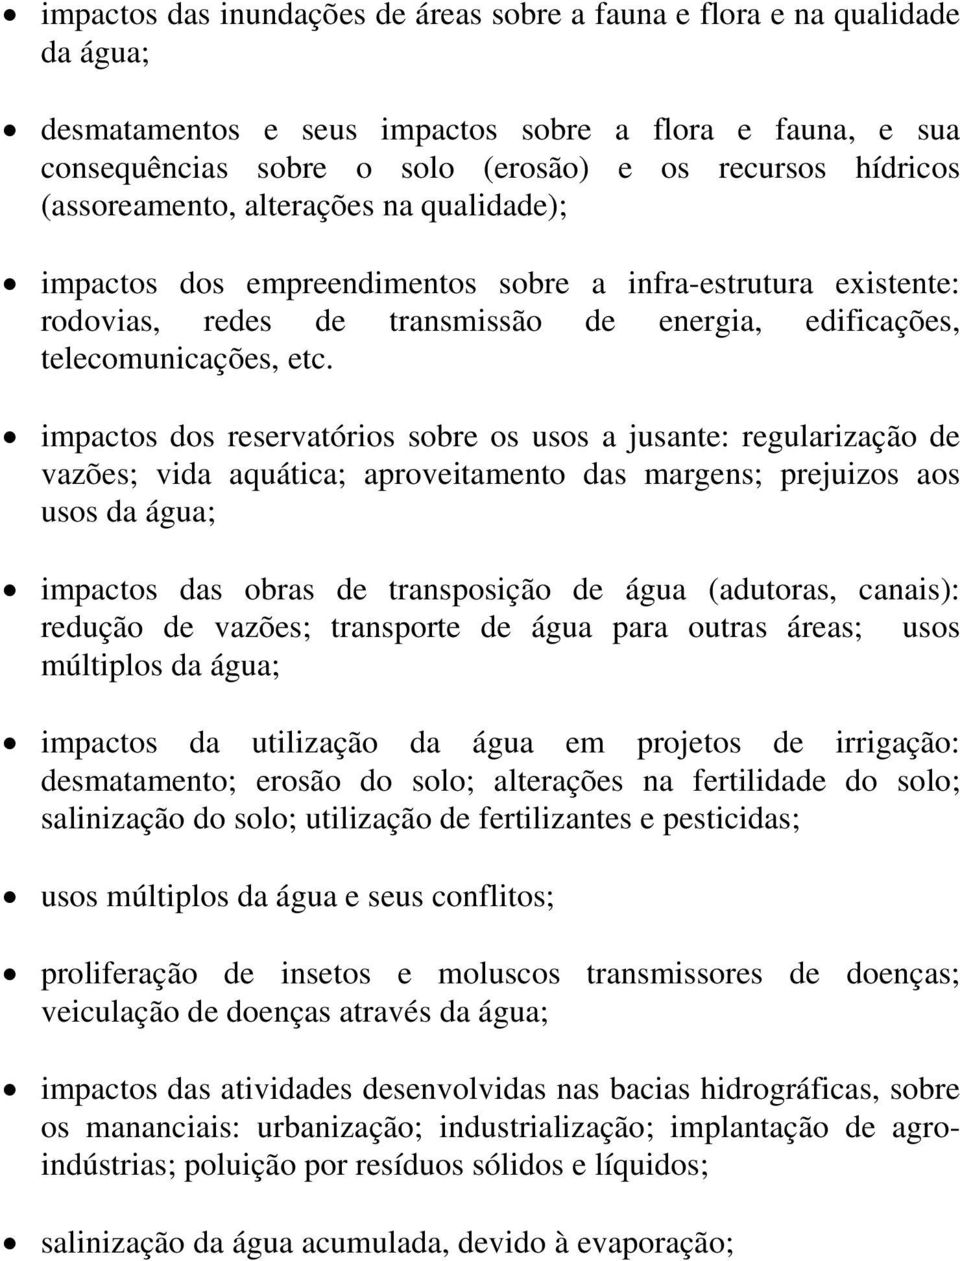 impactos dos reservatórios sobre os usos a jusante: regularização de vazões; vida aquática; aproveitamento das margens; prejuizos aos usos da água; impactos das obras de transposição de água